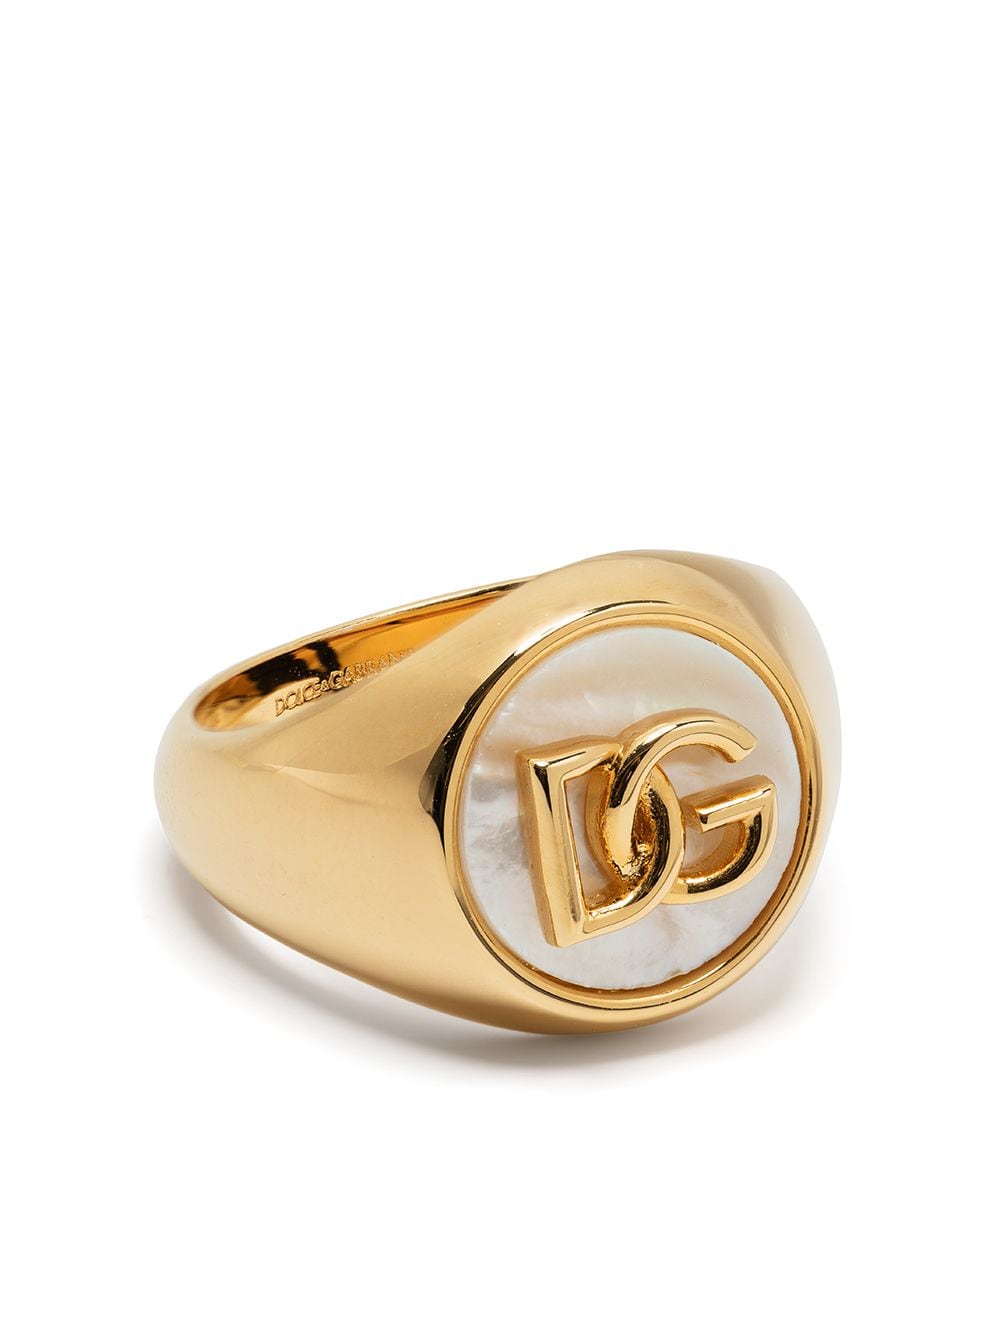 фото Dolce & gabbana кольцо с логотипом